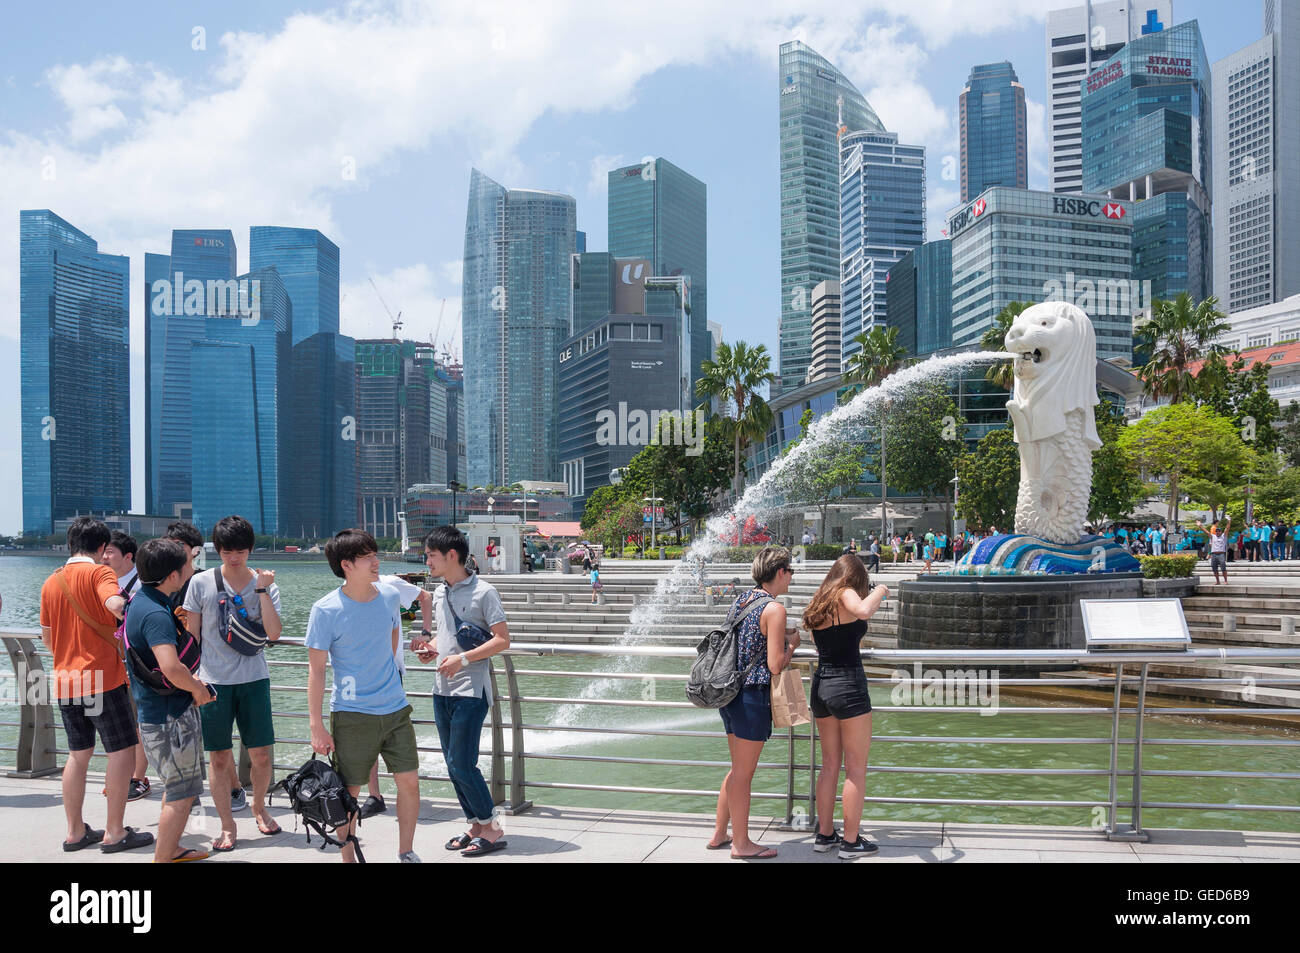 La statue du Merlion (Singa-Lau) montrant la diversité biologique des gratte-ciel, Marina Bay, zone centrale, l'île de Pulau Ujong (Singapour), Singapour Banque D'Images